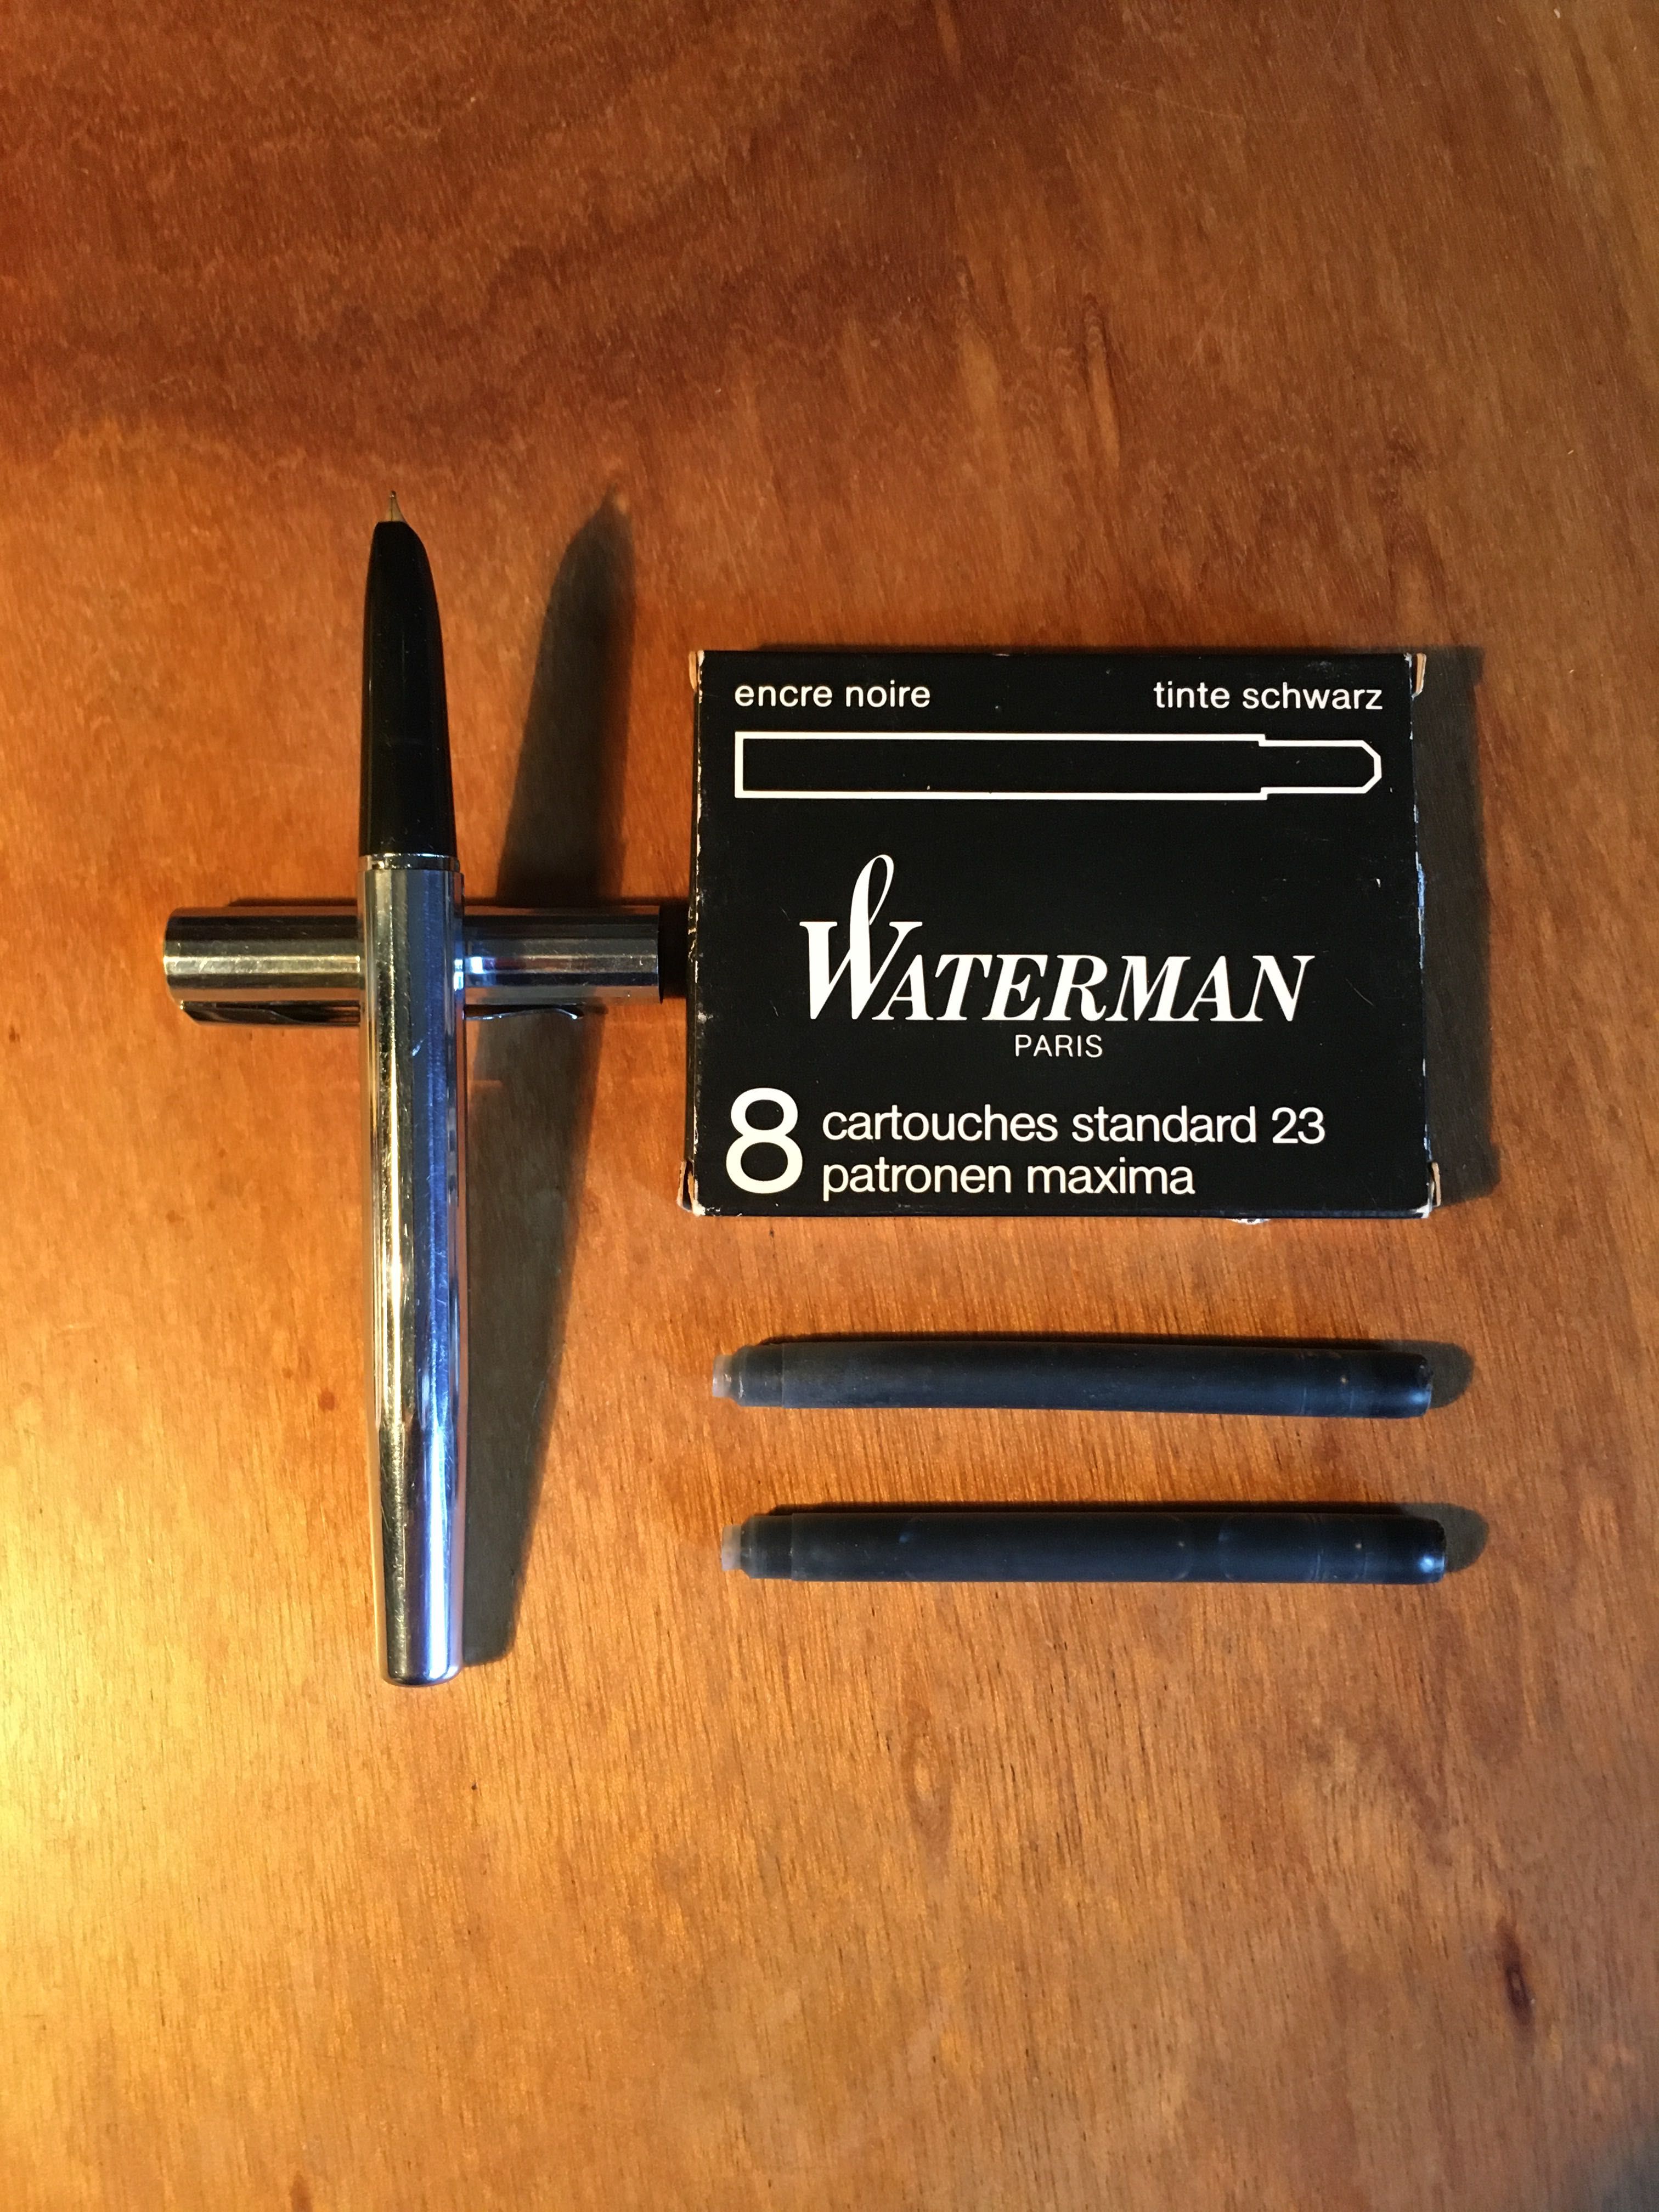 WATERMAN - caneta - esferográfica - lapiseira